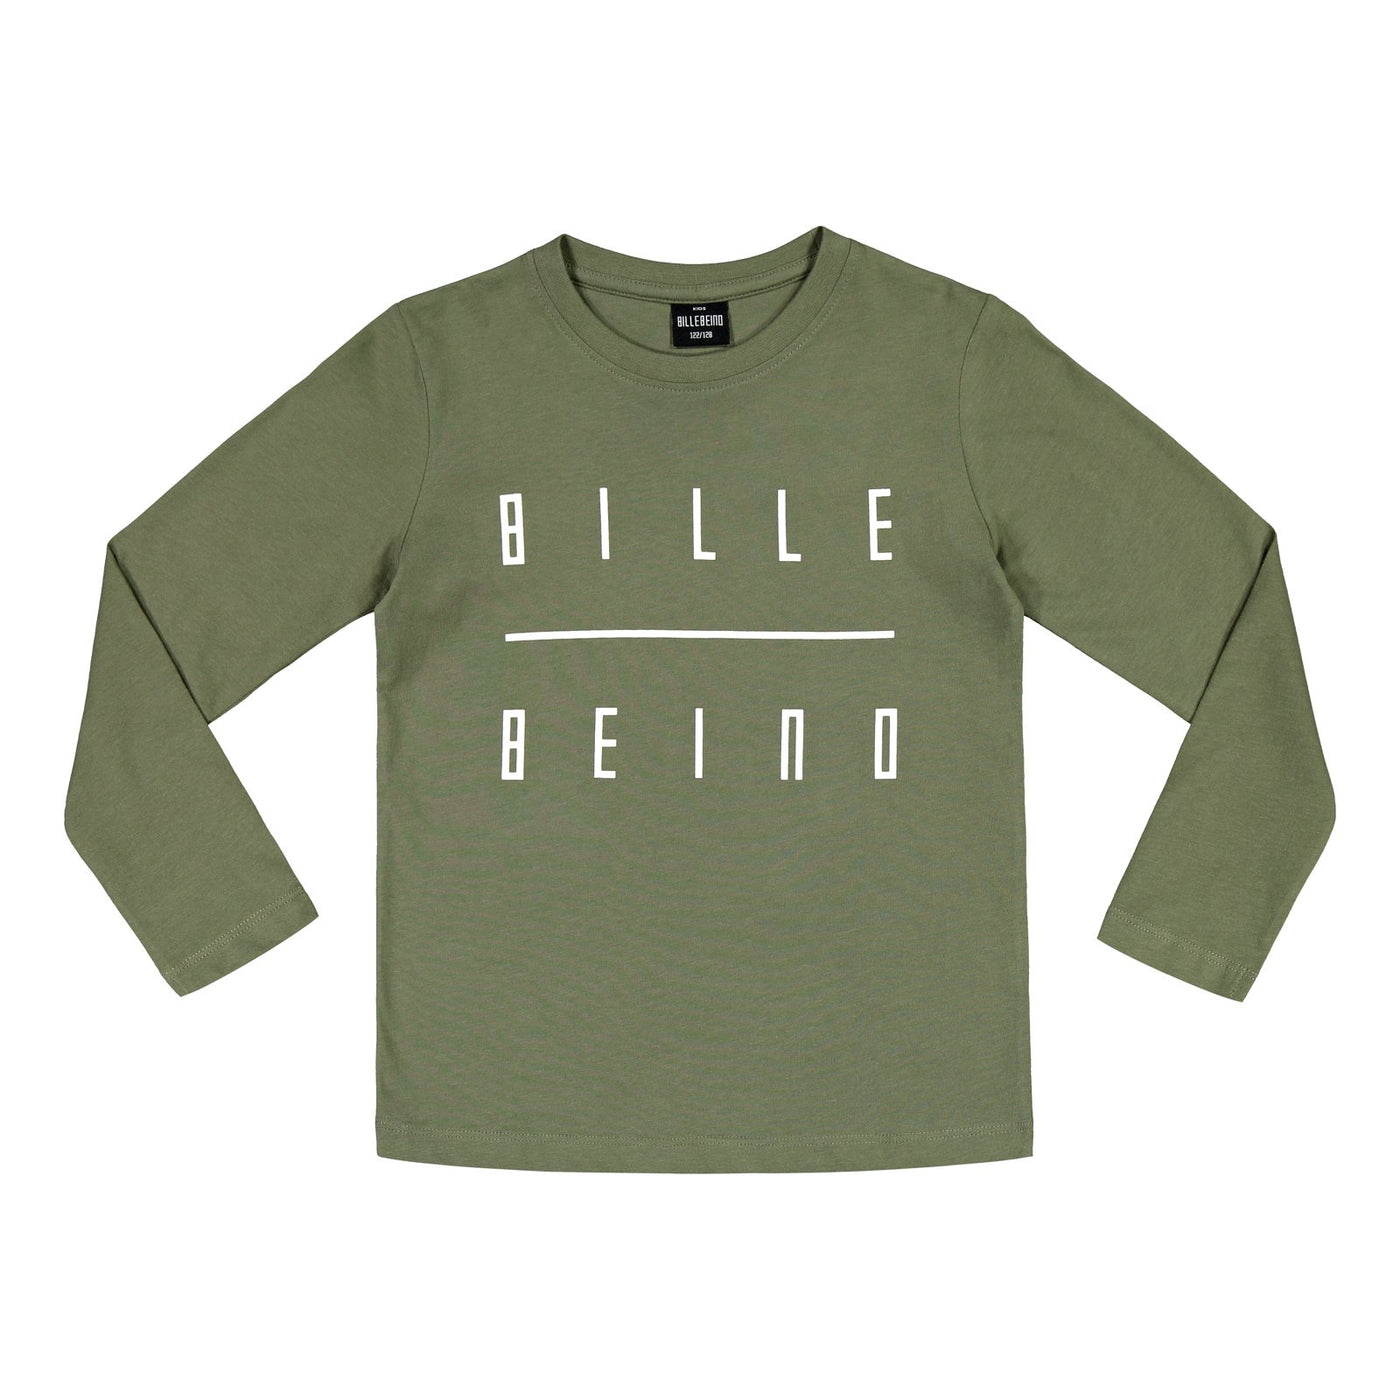 Kids Billebeino Long sleeve T-shirt